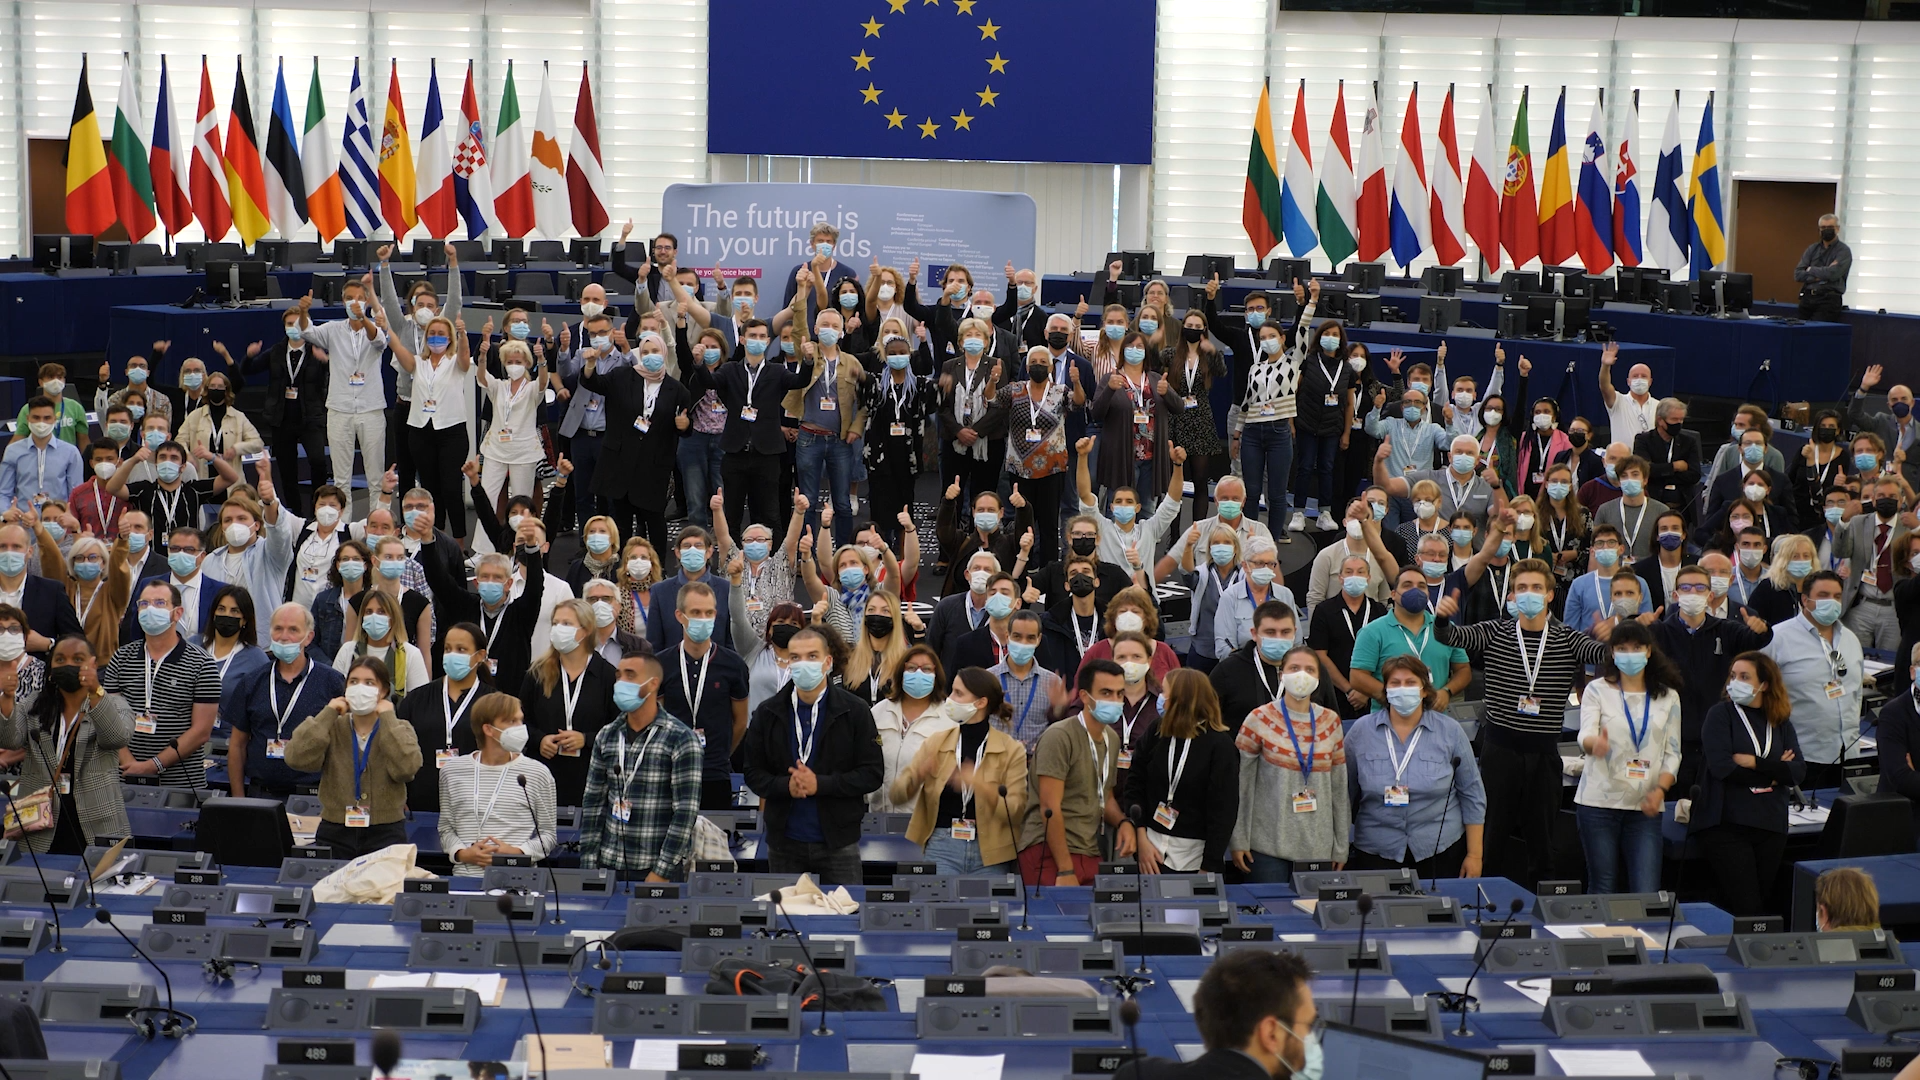 Bakom kulisserna på konferensen om Europas framtid